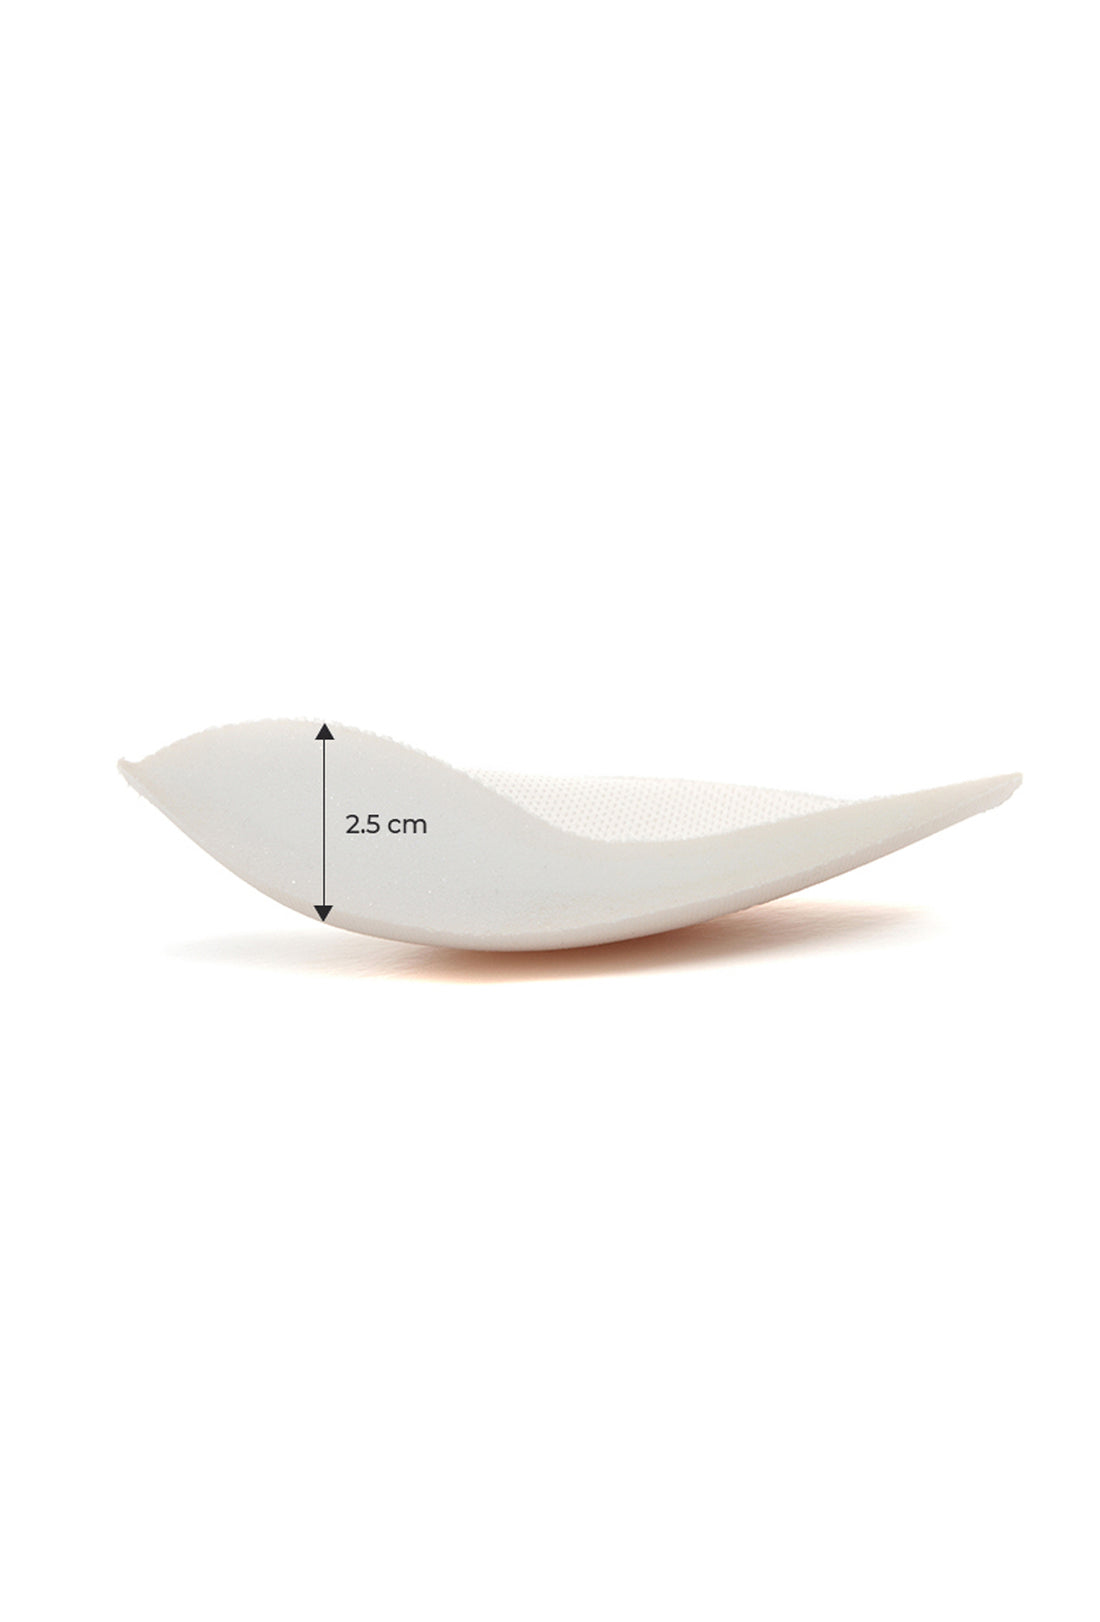 XEXYMIX Glam Bra Pads - 2.5cm